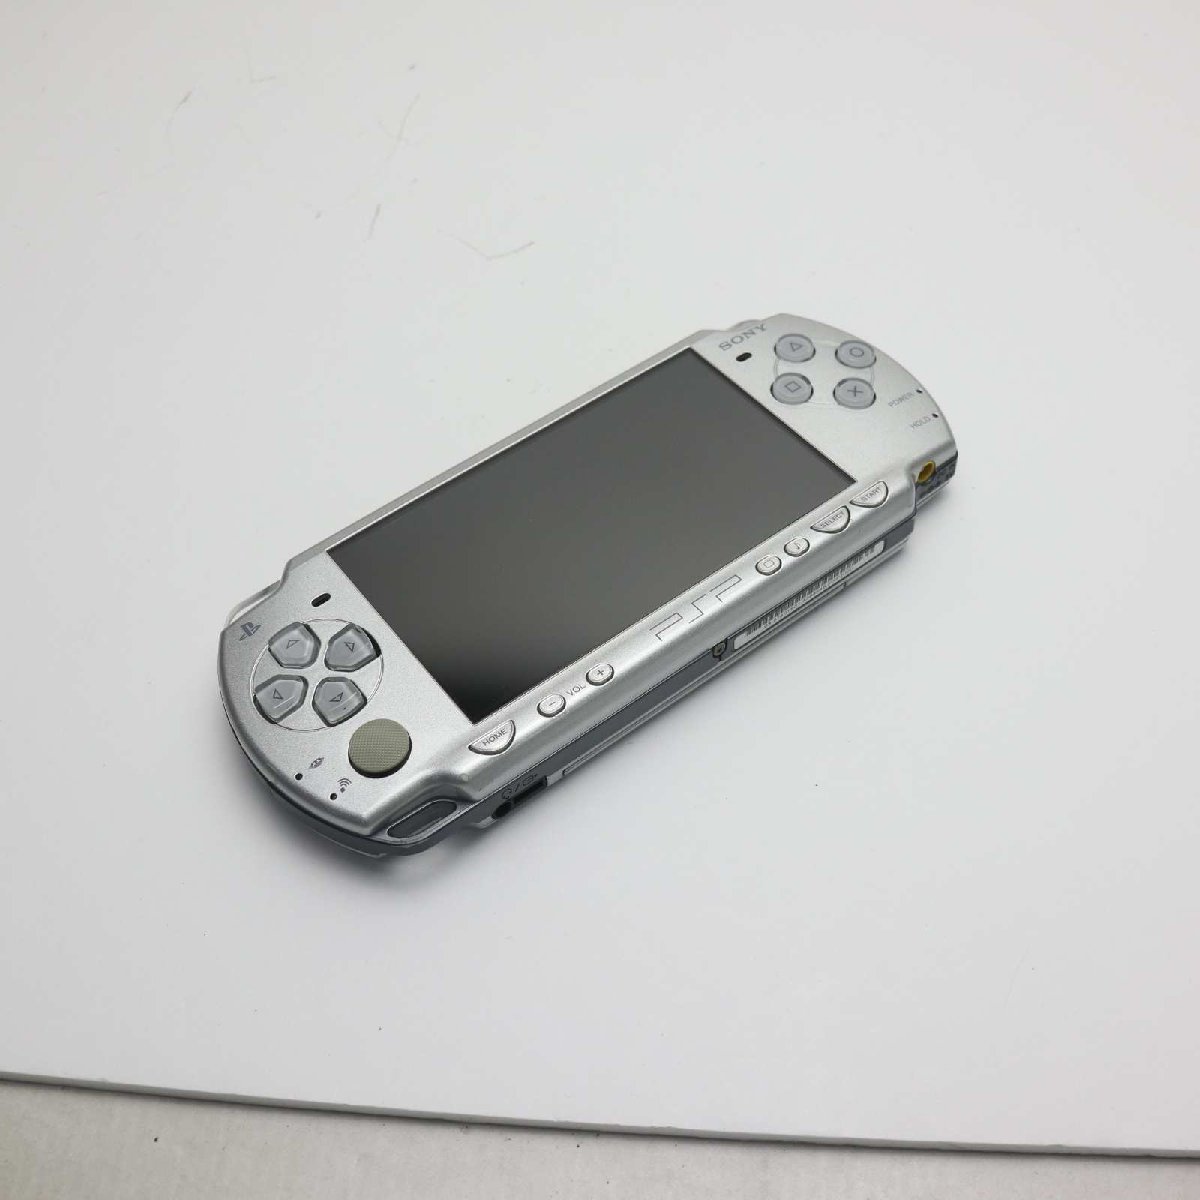 美品 PSP-2000 アイス・シルバー 即日発送 game SONY PlayStation Portable 本体 あすつく 土日祝発送OK